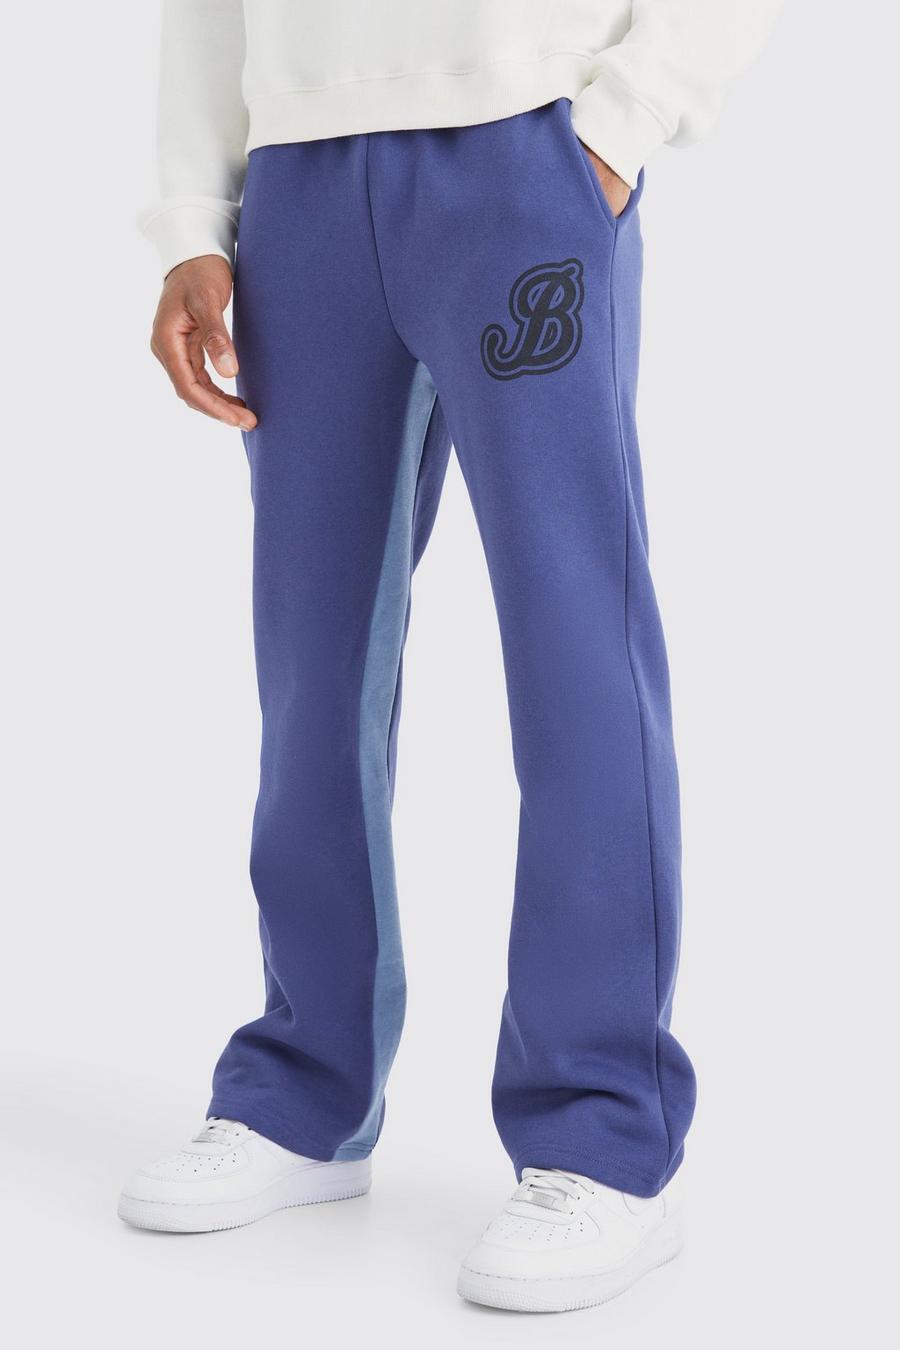 Pantalón deportivo con refuerzos y letra B universitaria, Slate blue image number 1